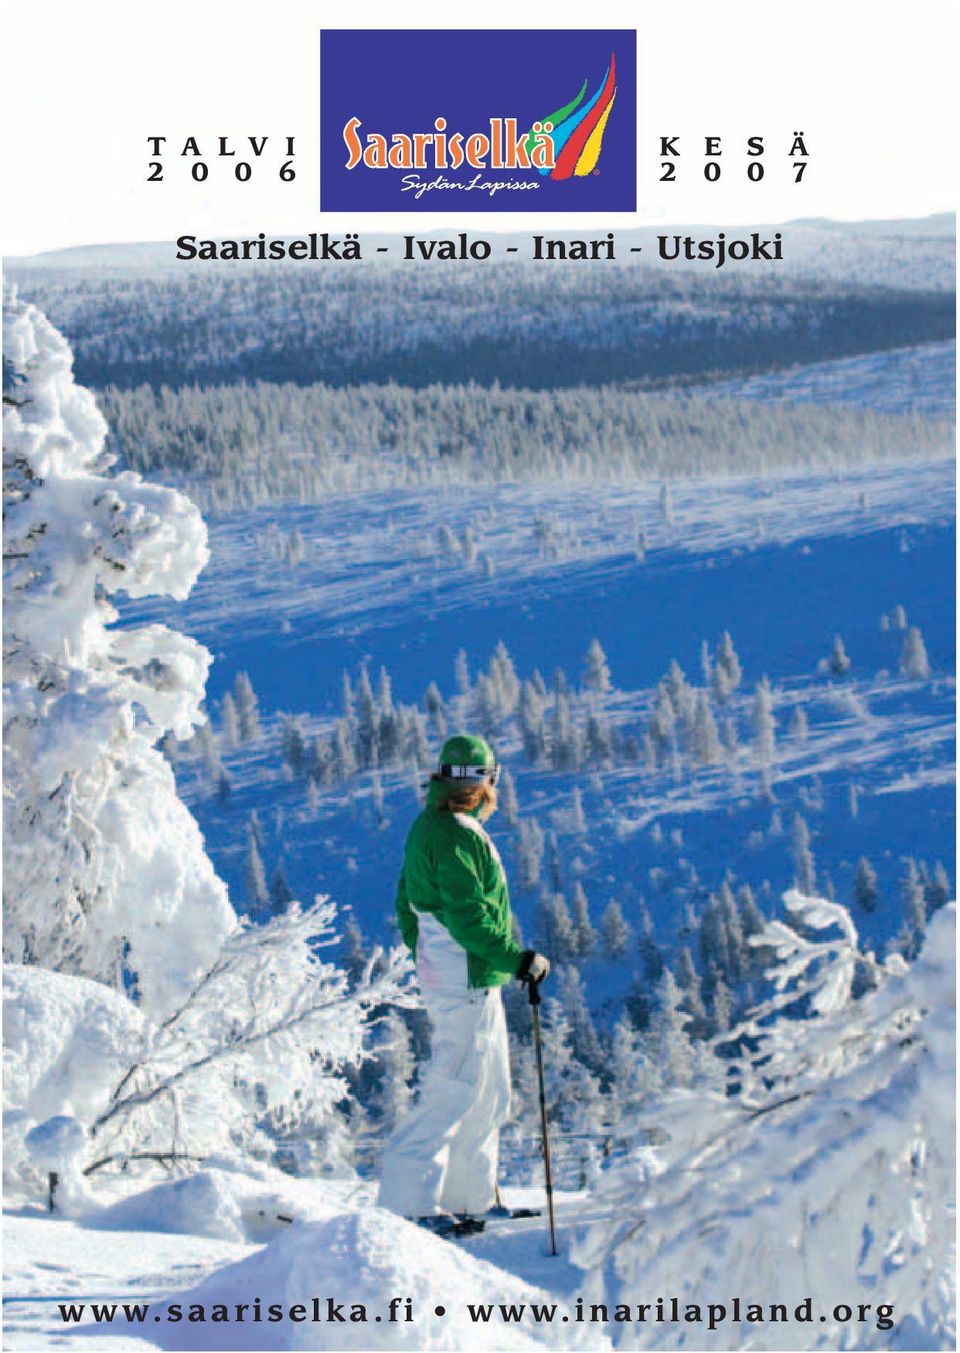 Inari - Utsjoki www.